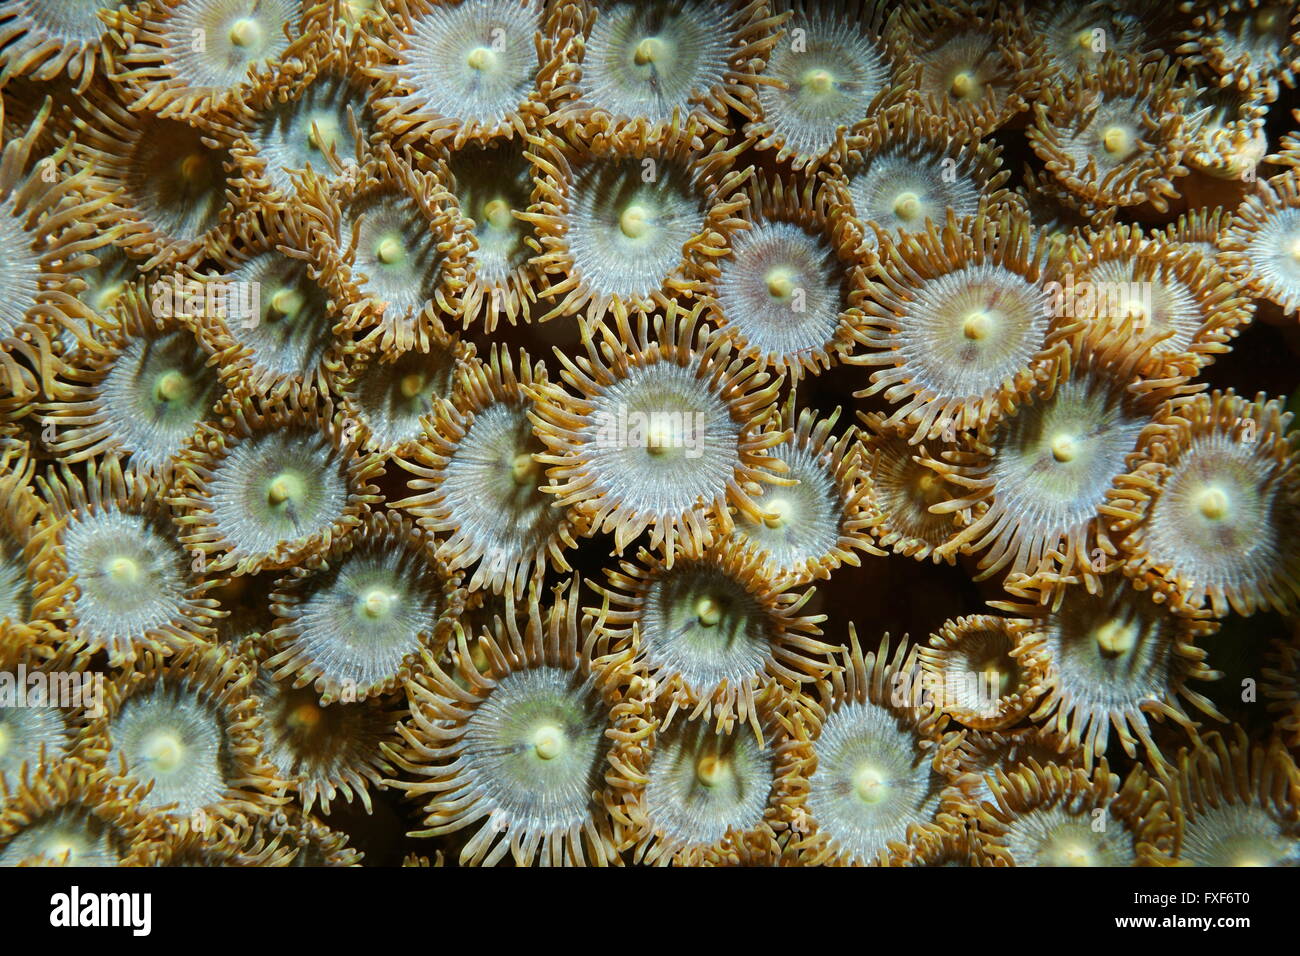 La vie marine sous-marine, Close up de Zoanthus pulchellus zoanthids, Mat, mer des Caraïbes Banque D'Images